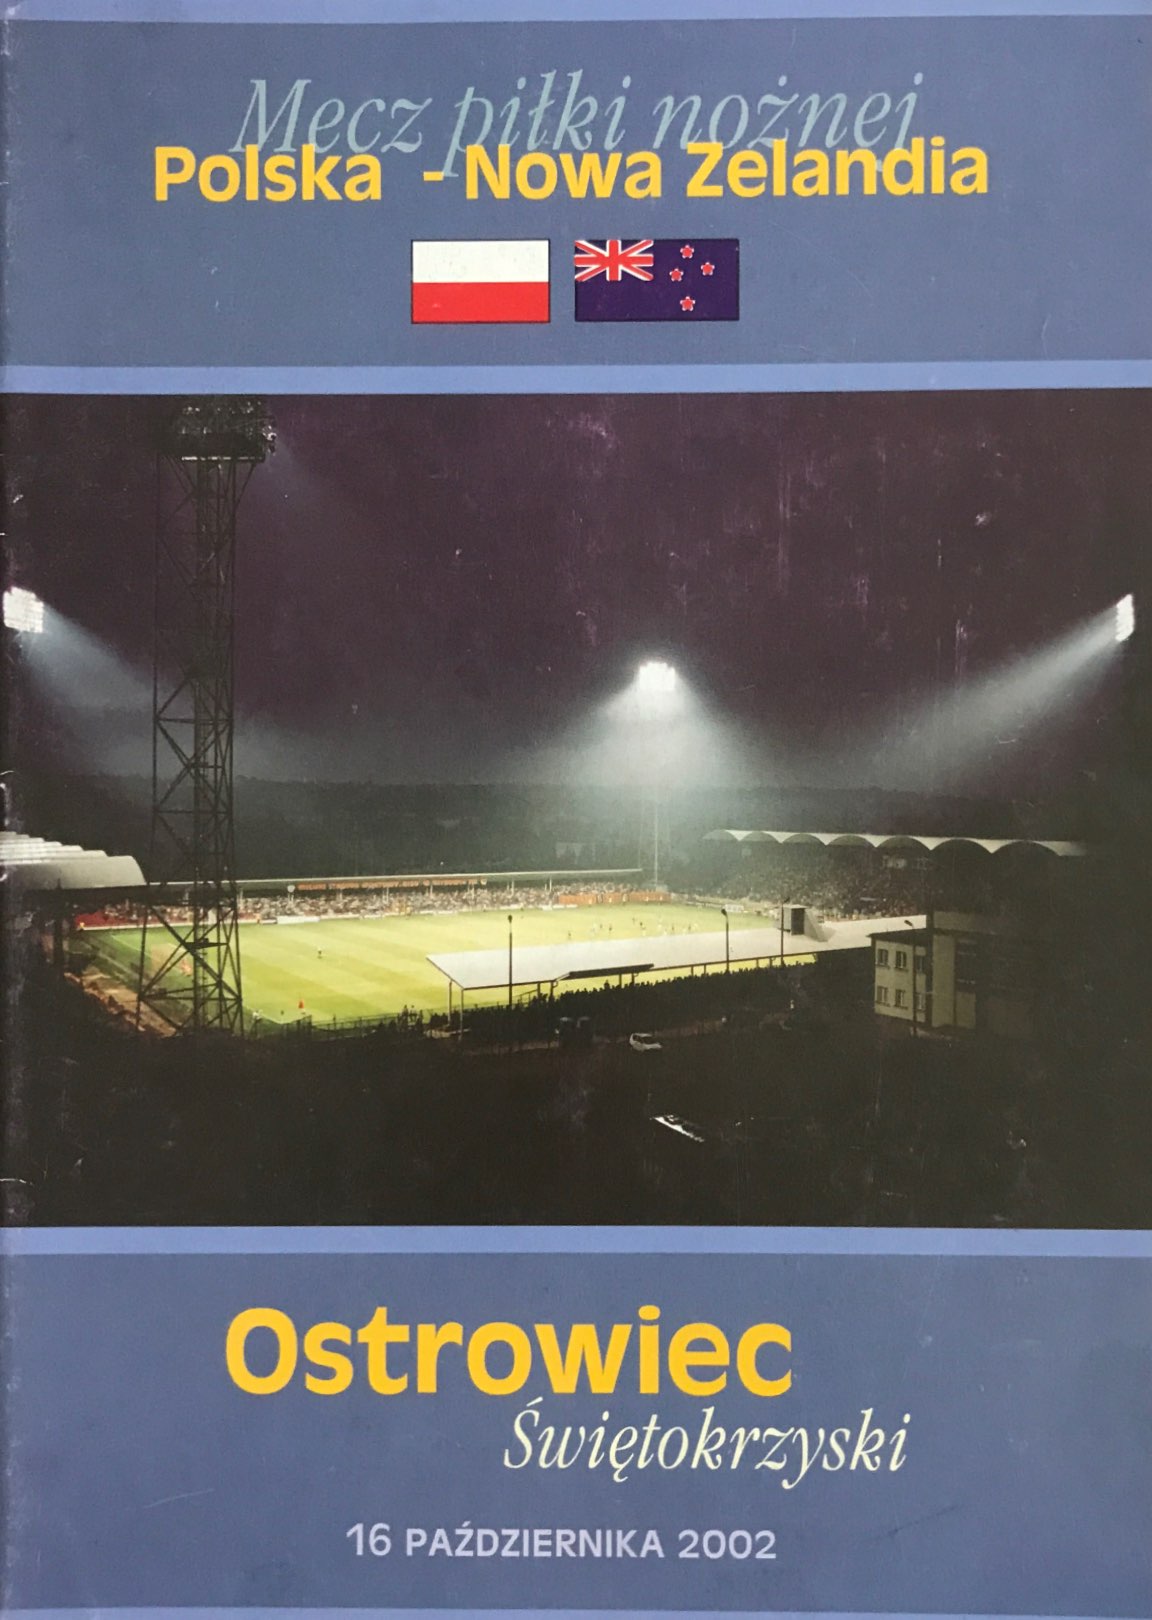 Program meczowy Polska - Nowa Zelandia 2:0 (16.10.2002).